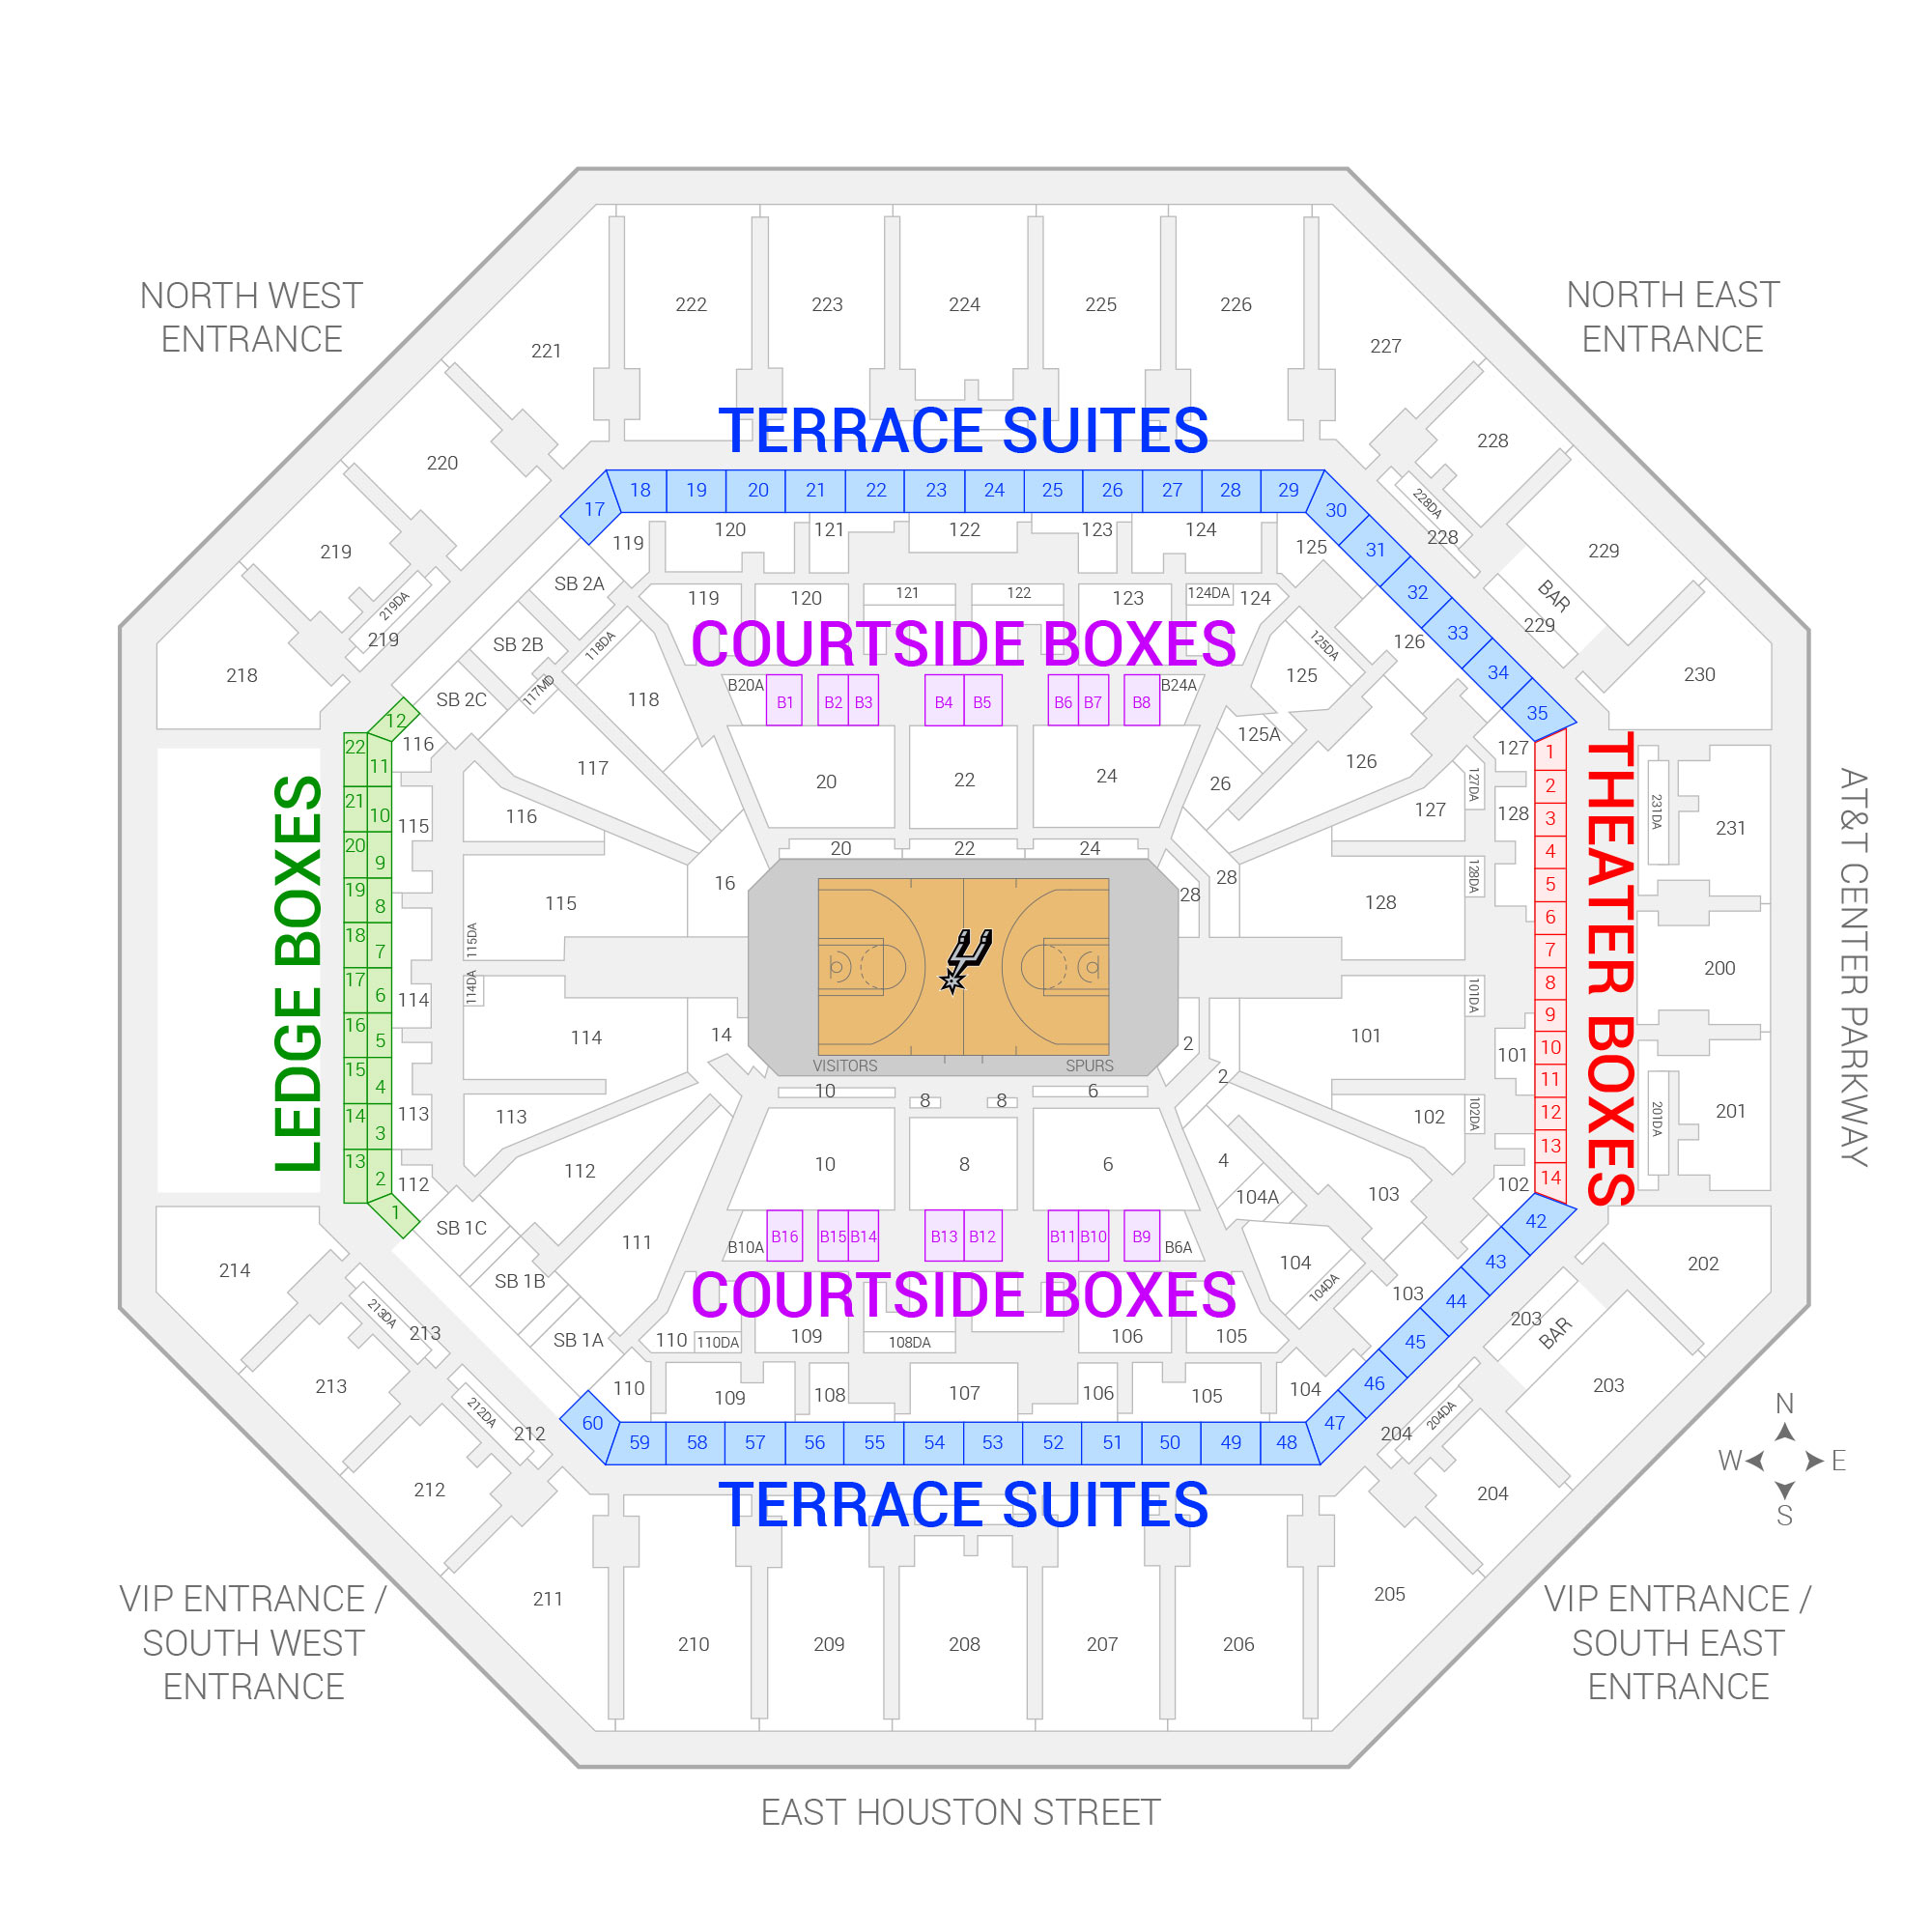 ATT Center, AT&T Center, Spurs Seating Chart